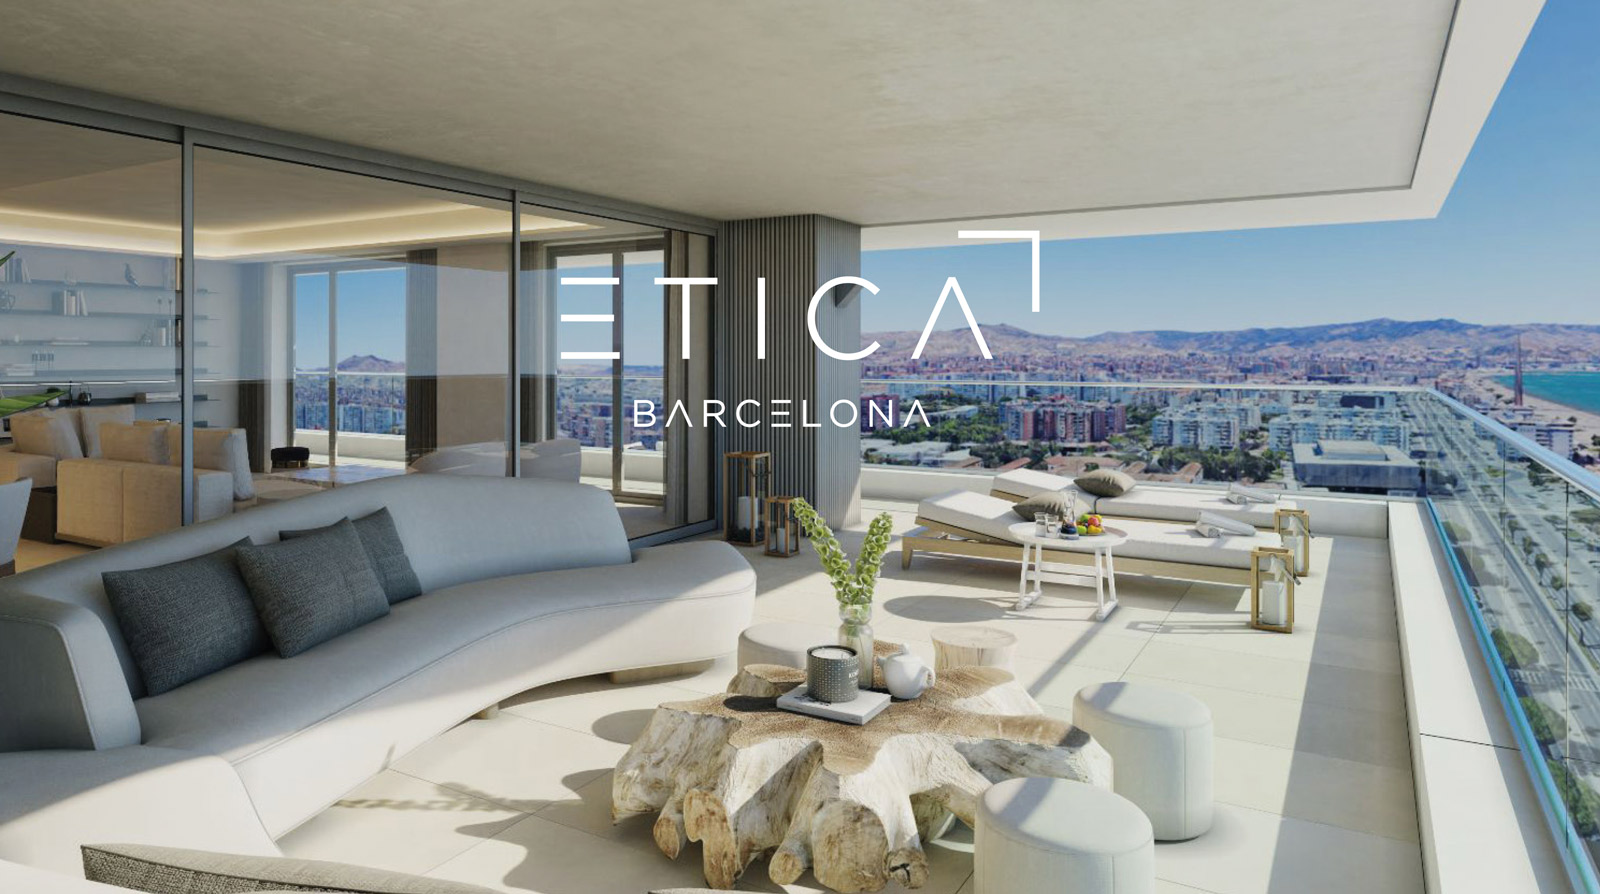 Diseño gráfico y creativo de restyling de logo y branding para agencia inmobiliaria ETICA BARCELONA